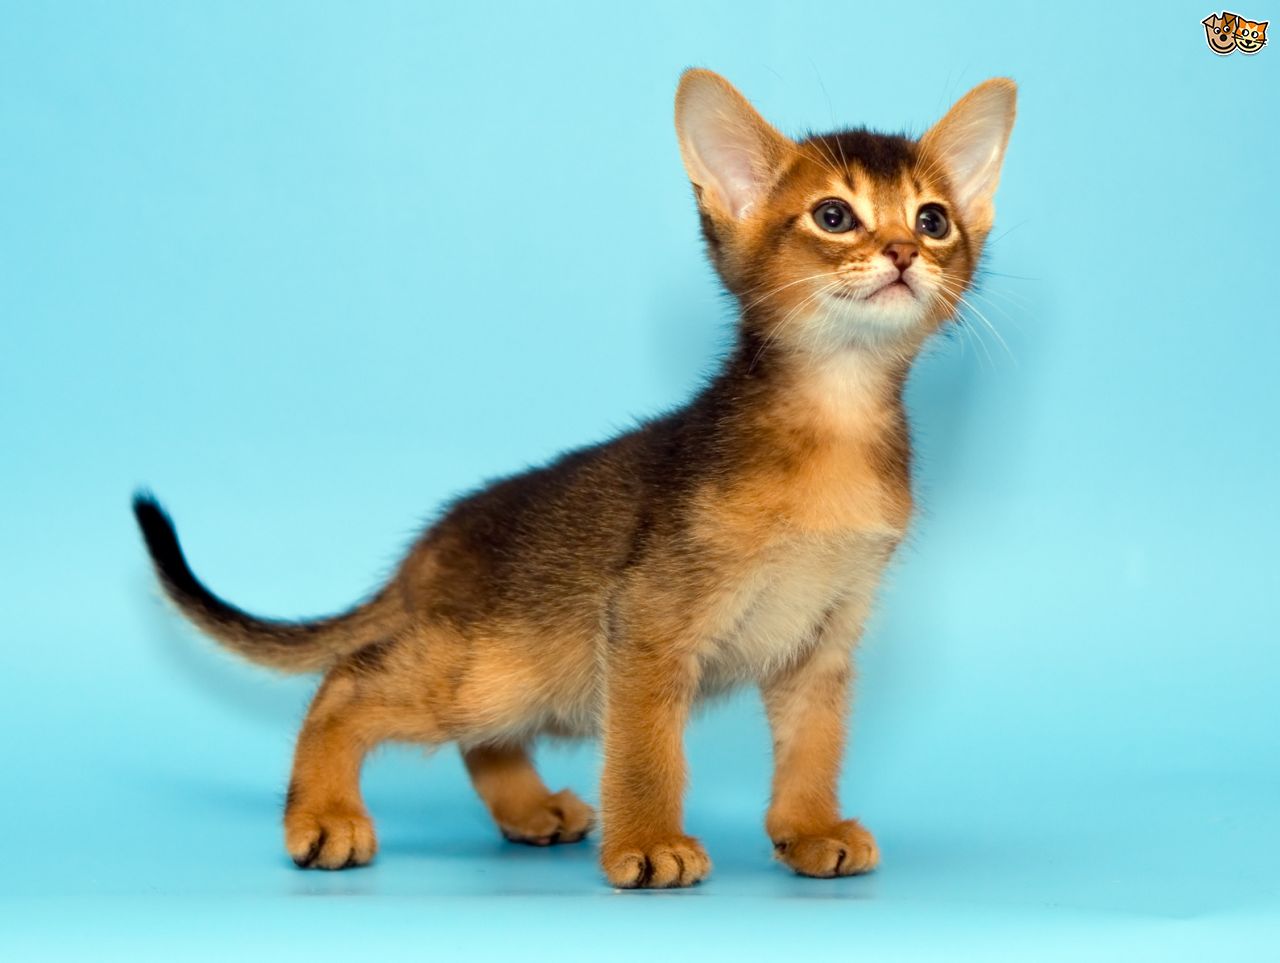 Cute Little Somali Kitten